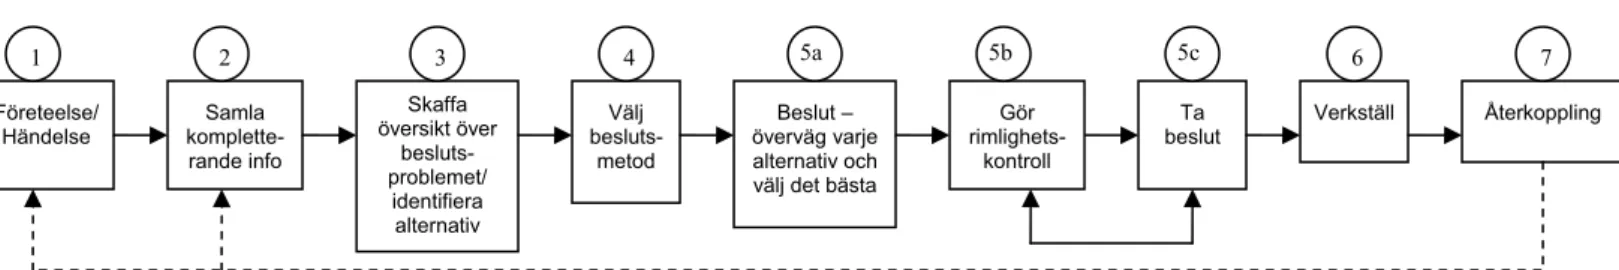 Figur 4.1. Modell av beslutsprocessen som använts i analysen.  